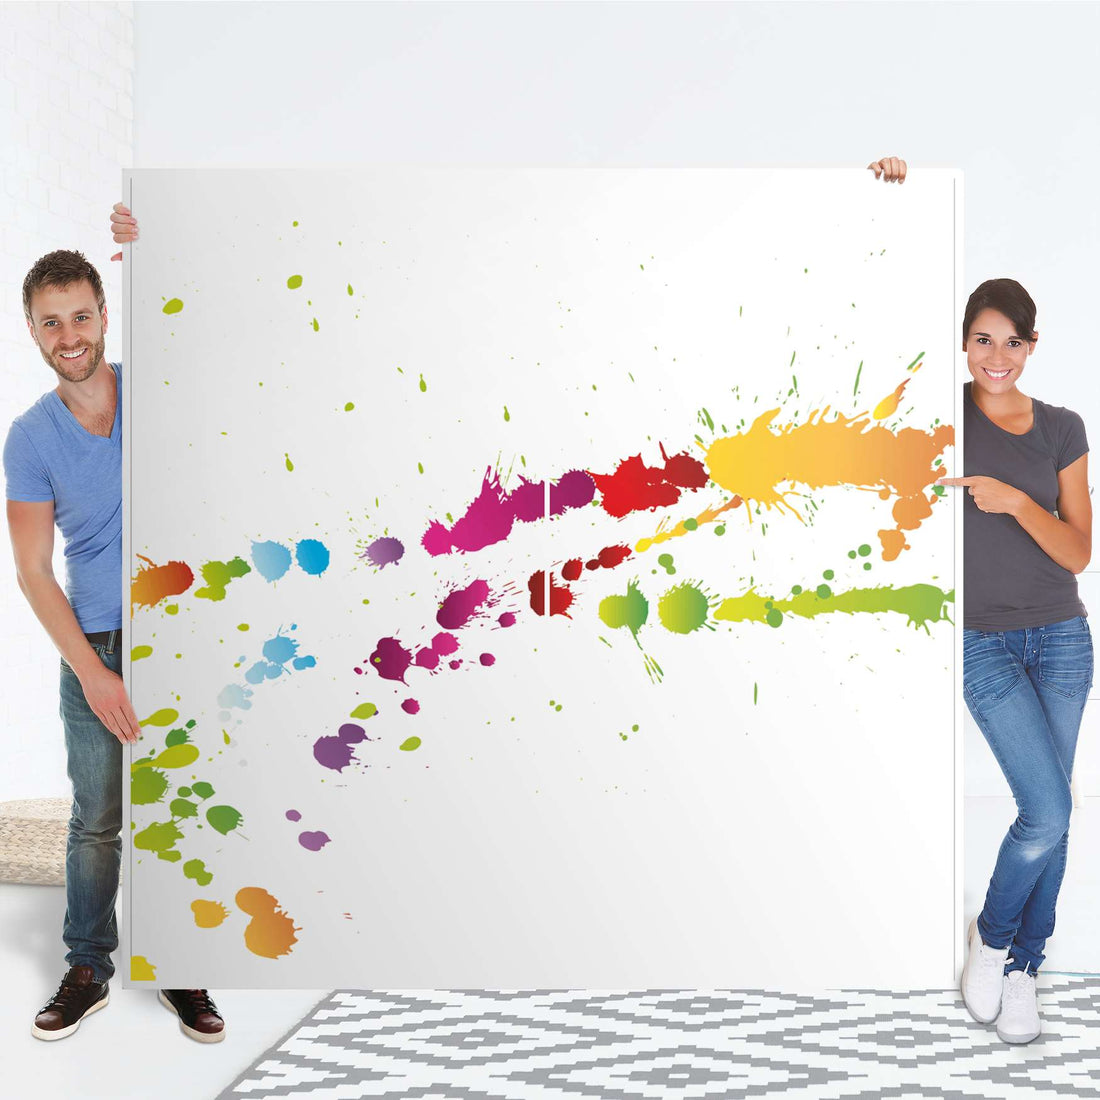 Möbel Klebefolie Splash 2 - IKEA Pax Schrank 201 cm Höhe - Schiebetür - Folie